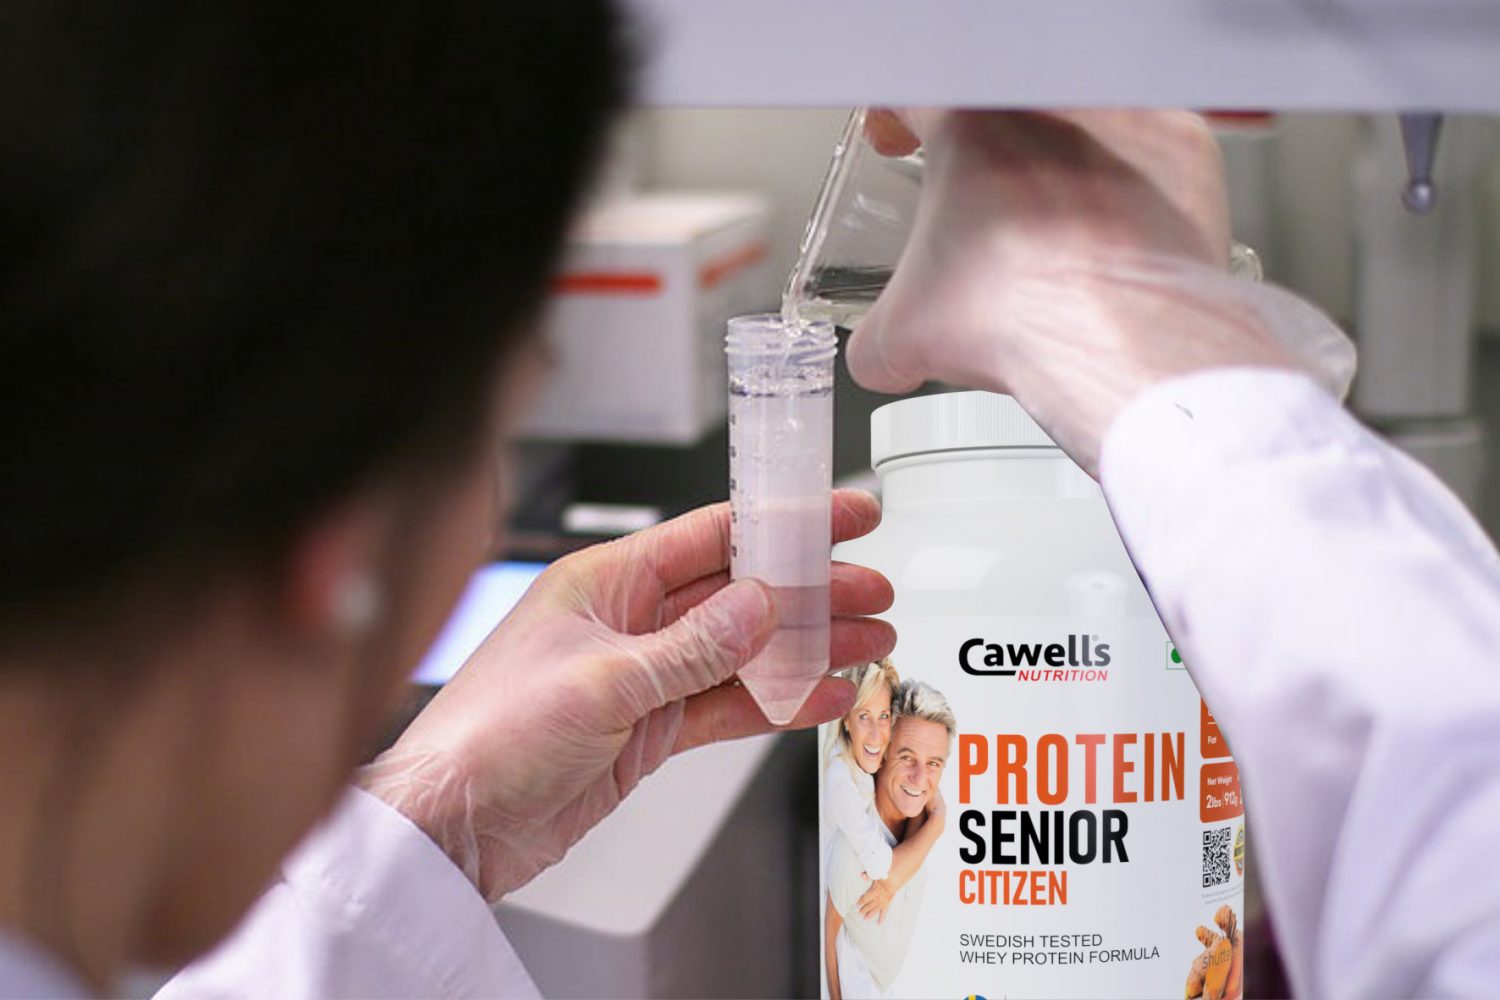 Cowells protein powder